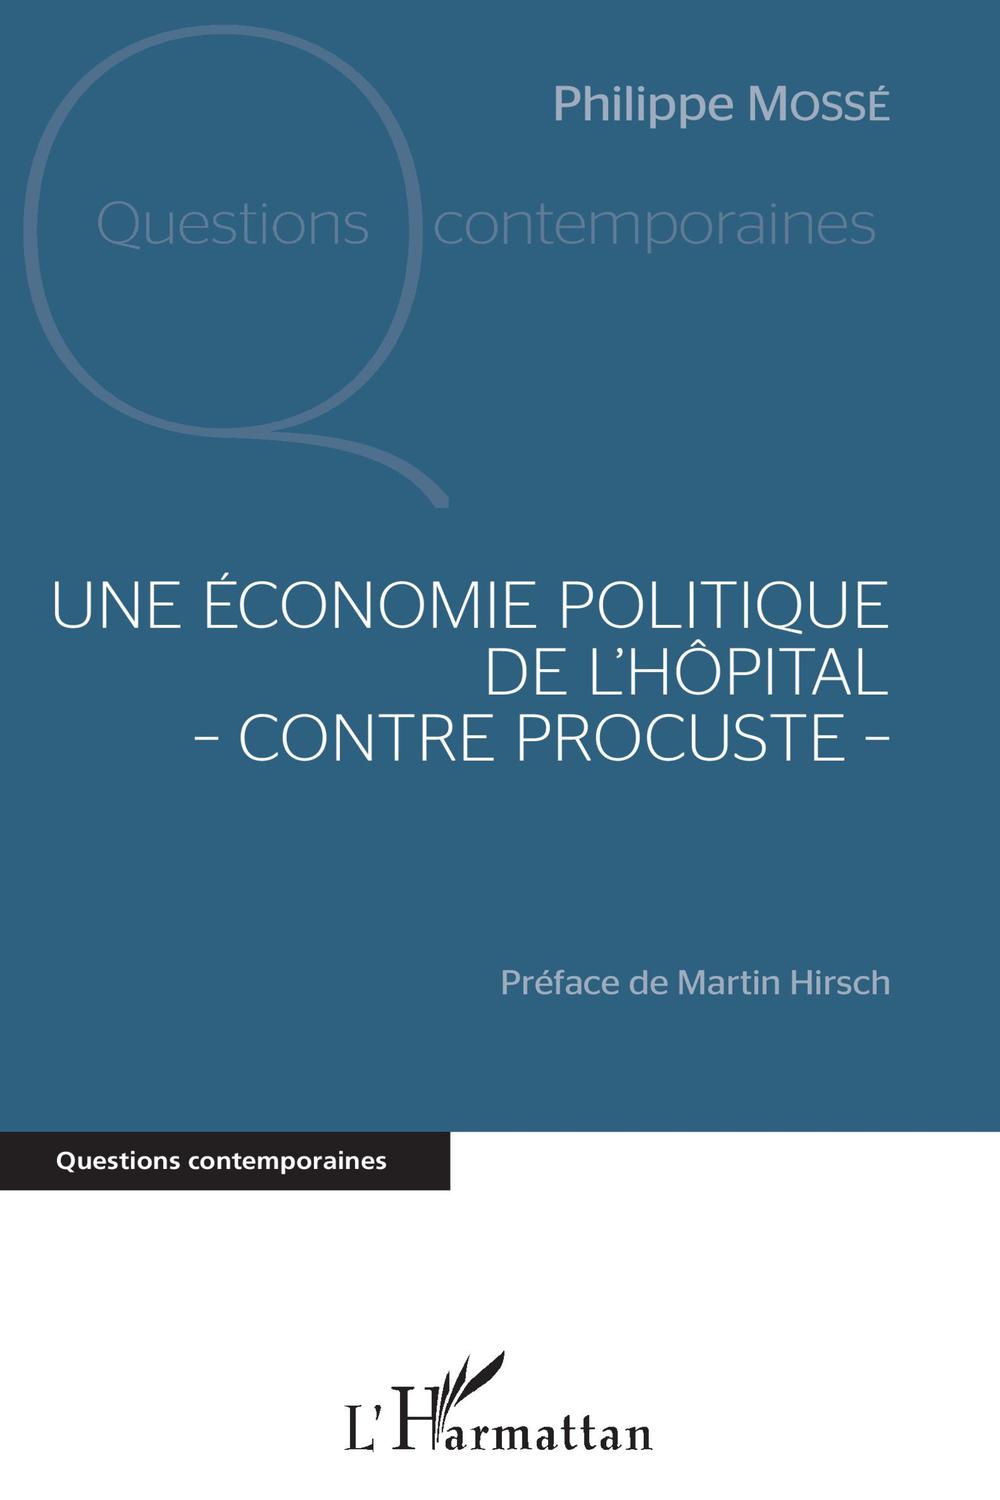 Une économie politique de l'hôpital - contre Procuste - - Philippe Mossé, Martin Hirsch